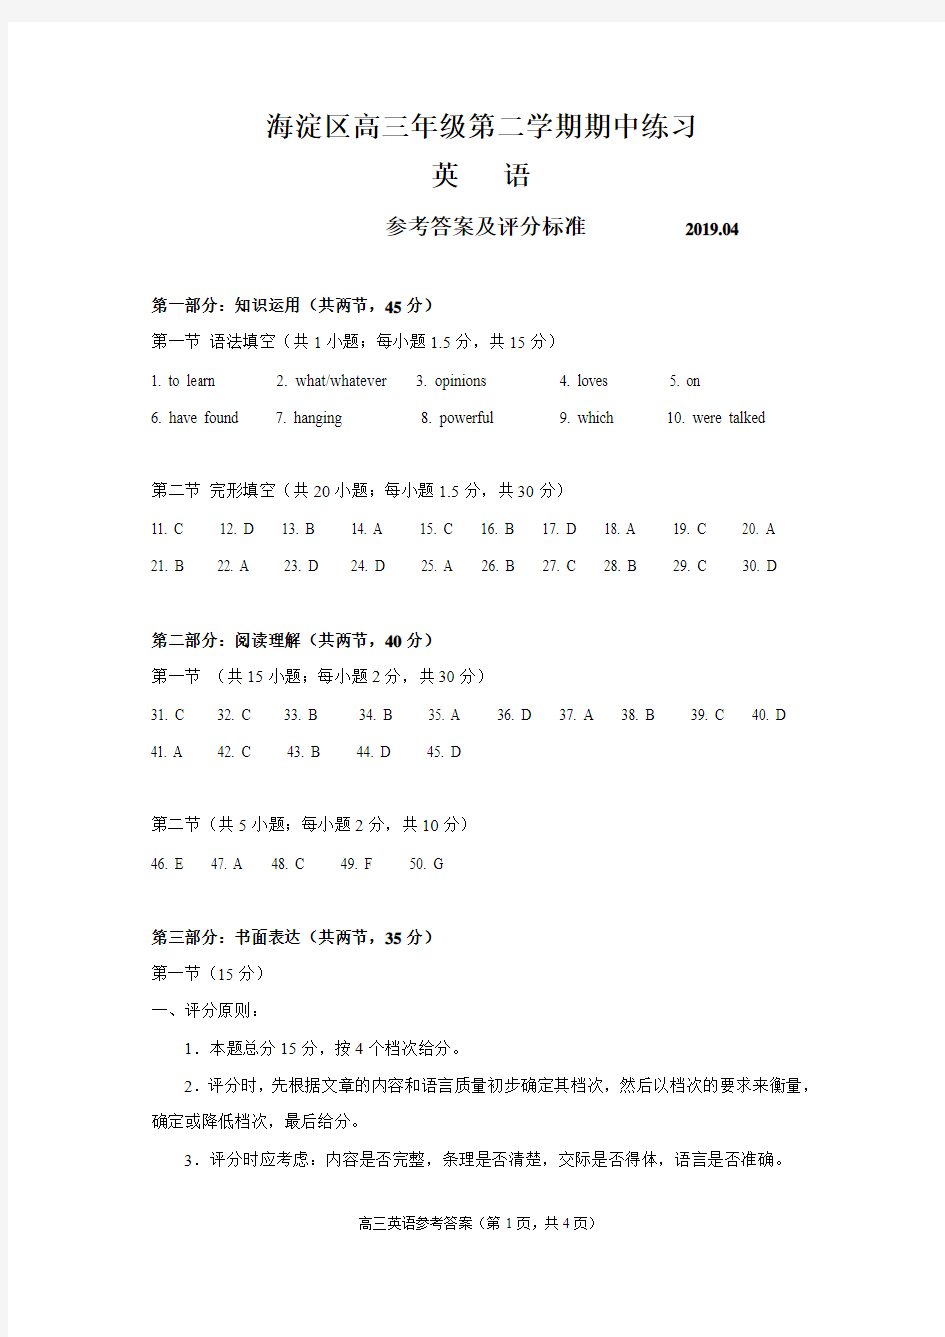 2019年北京市 海淀区高三年级第二学期期中练习答案